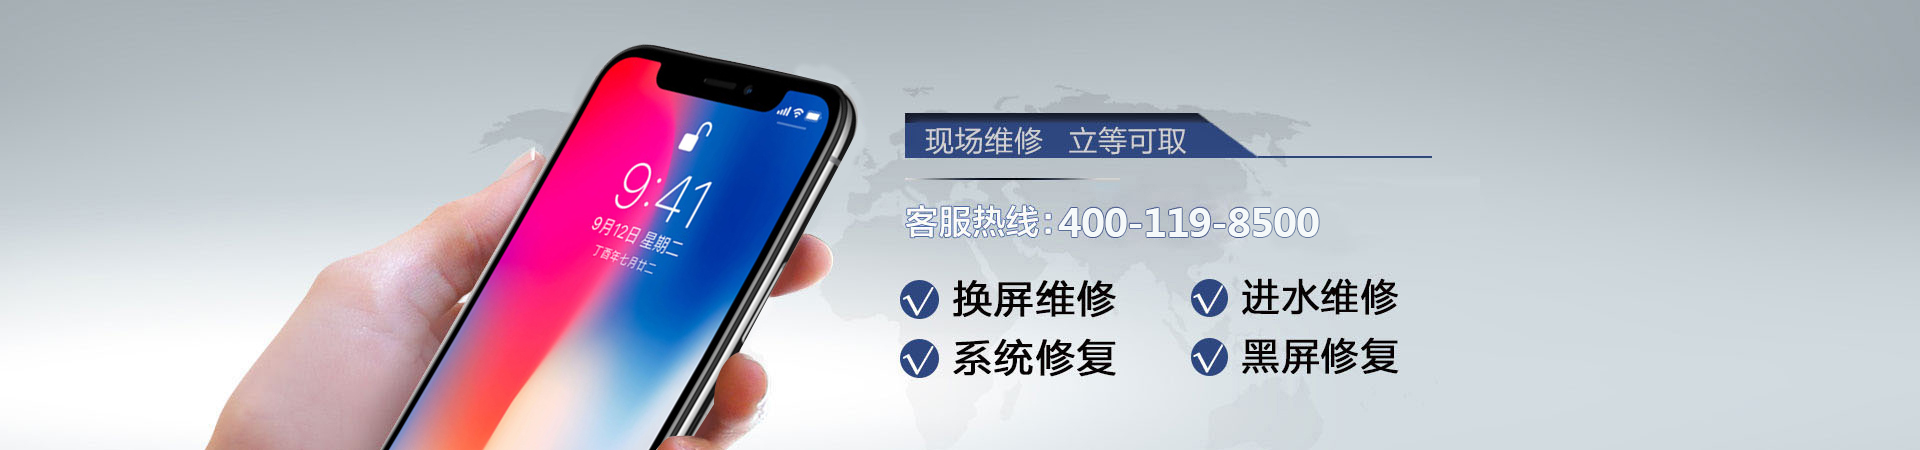 哈尔滨苹果手机维修服务地址查询